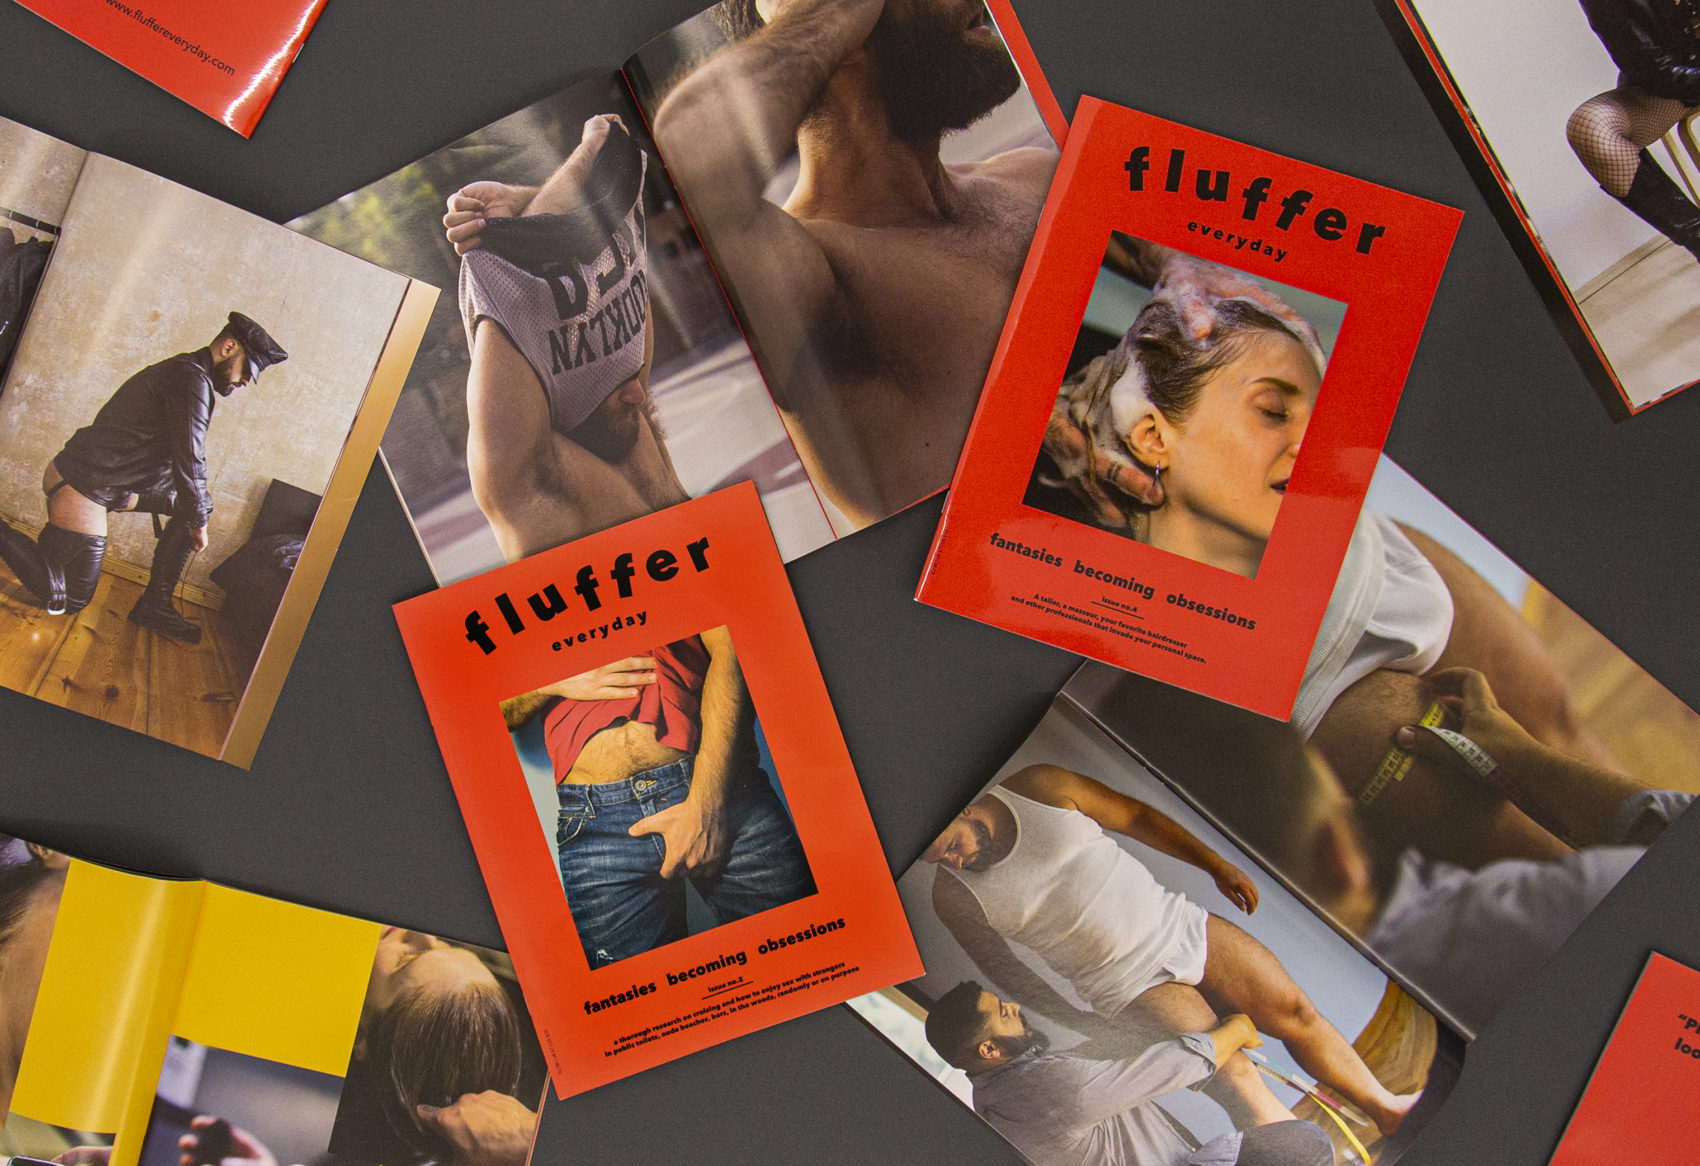 Fluffer Everyday - Paris Ass Book Fair